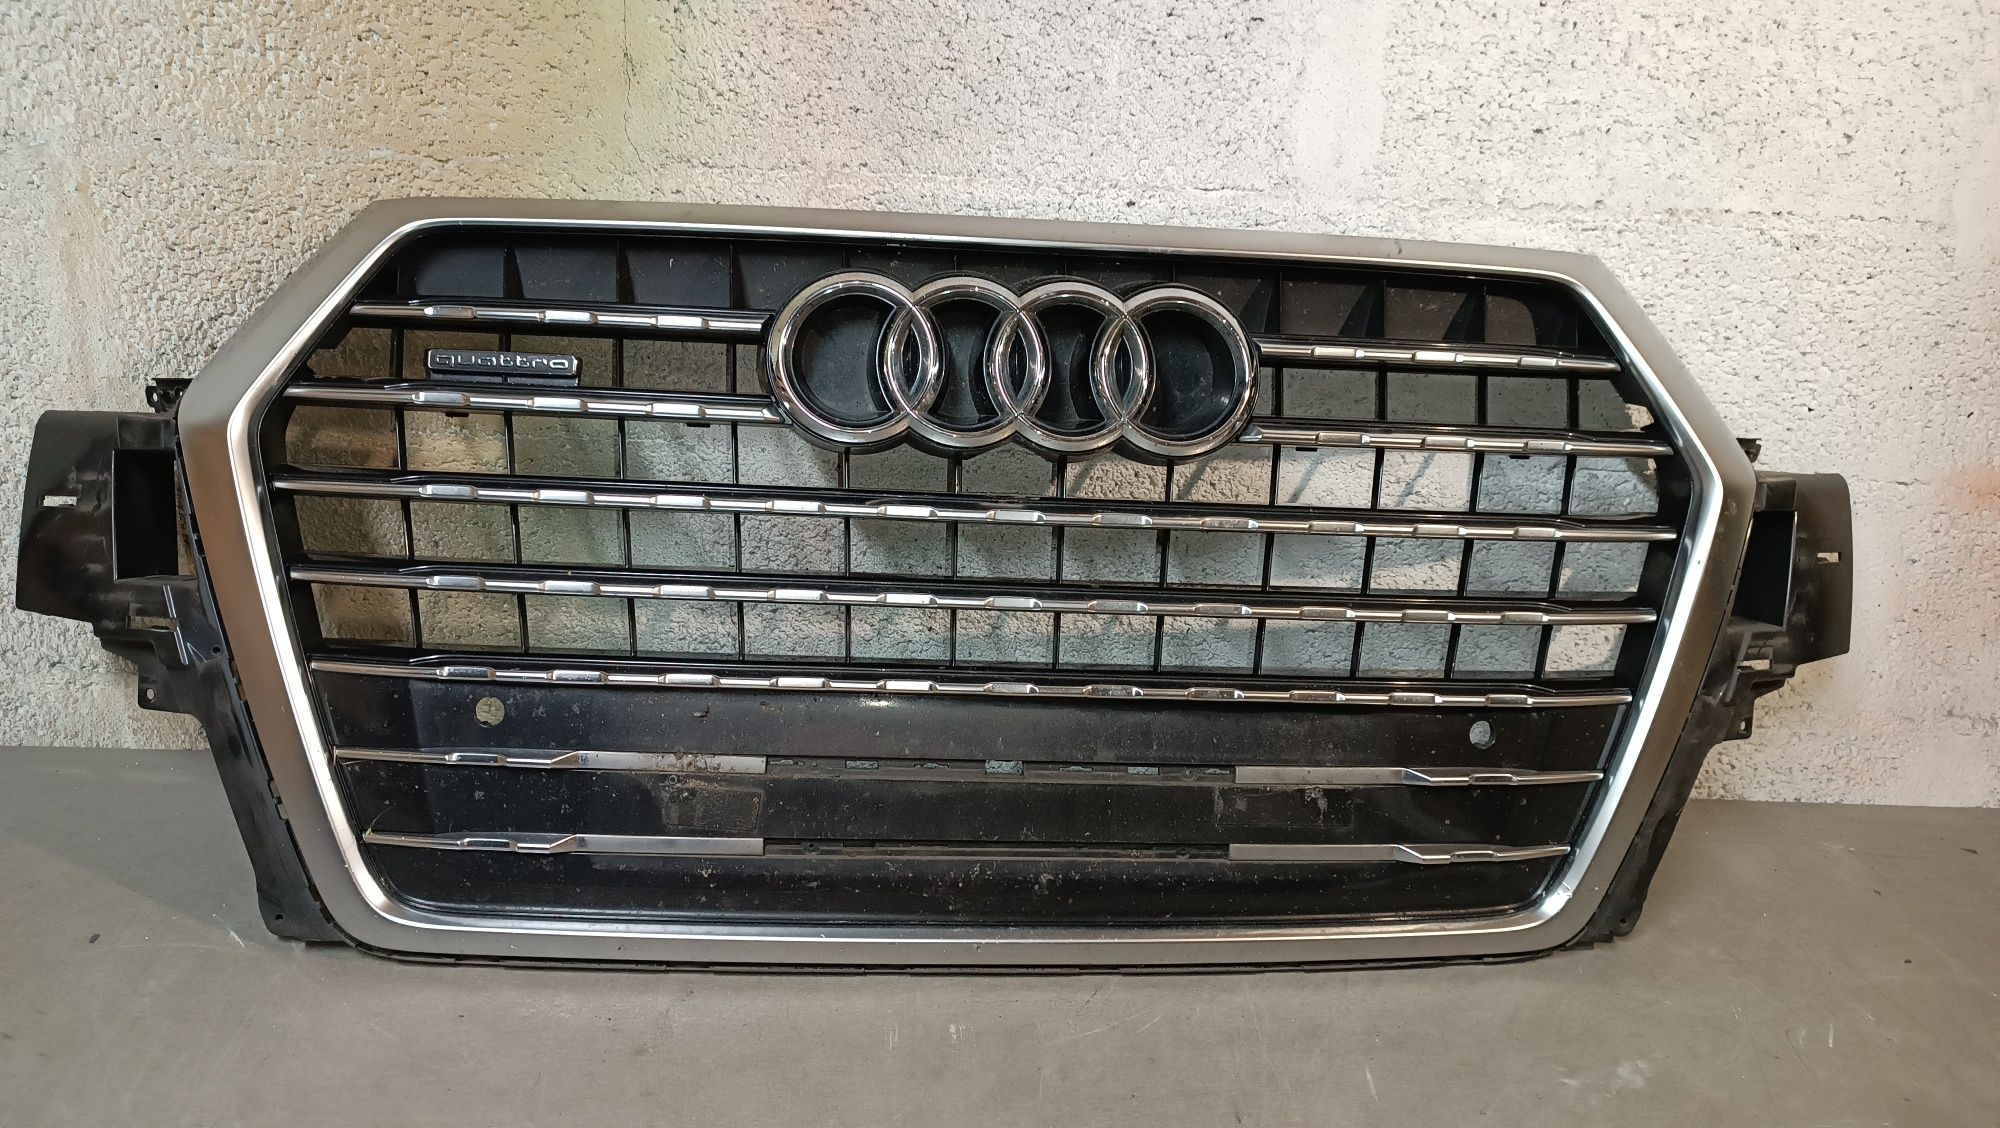 Vendo grelha de frente do Audi Q7 ano 2016/18